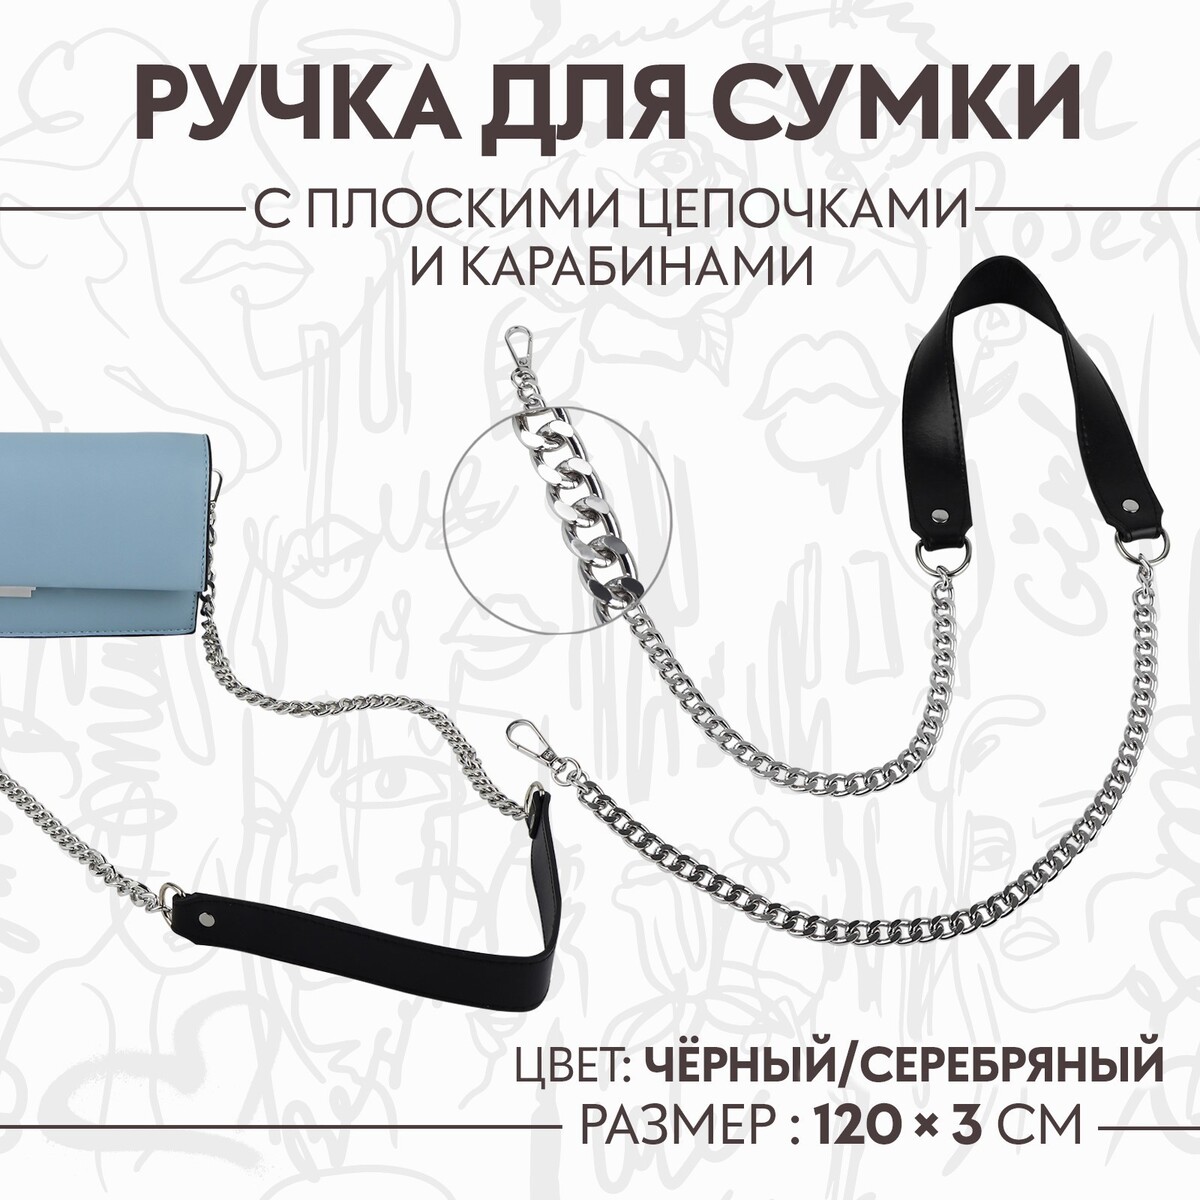 Ручка для сумки, с плоскими цепочками и карабинами, 120 × 3 см, цвет черный/серебряный ручка для сумки с цепочками и карабинами 120 × 1 8 см бордовый